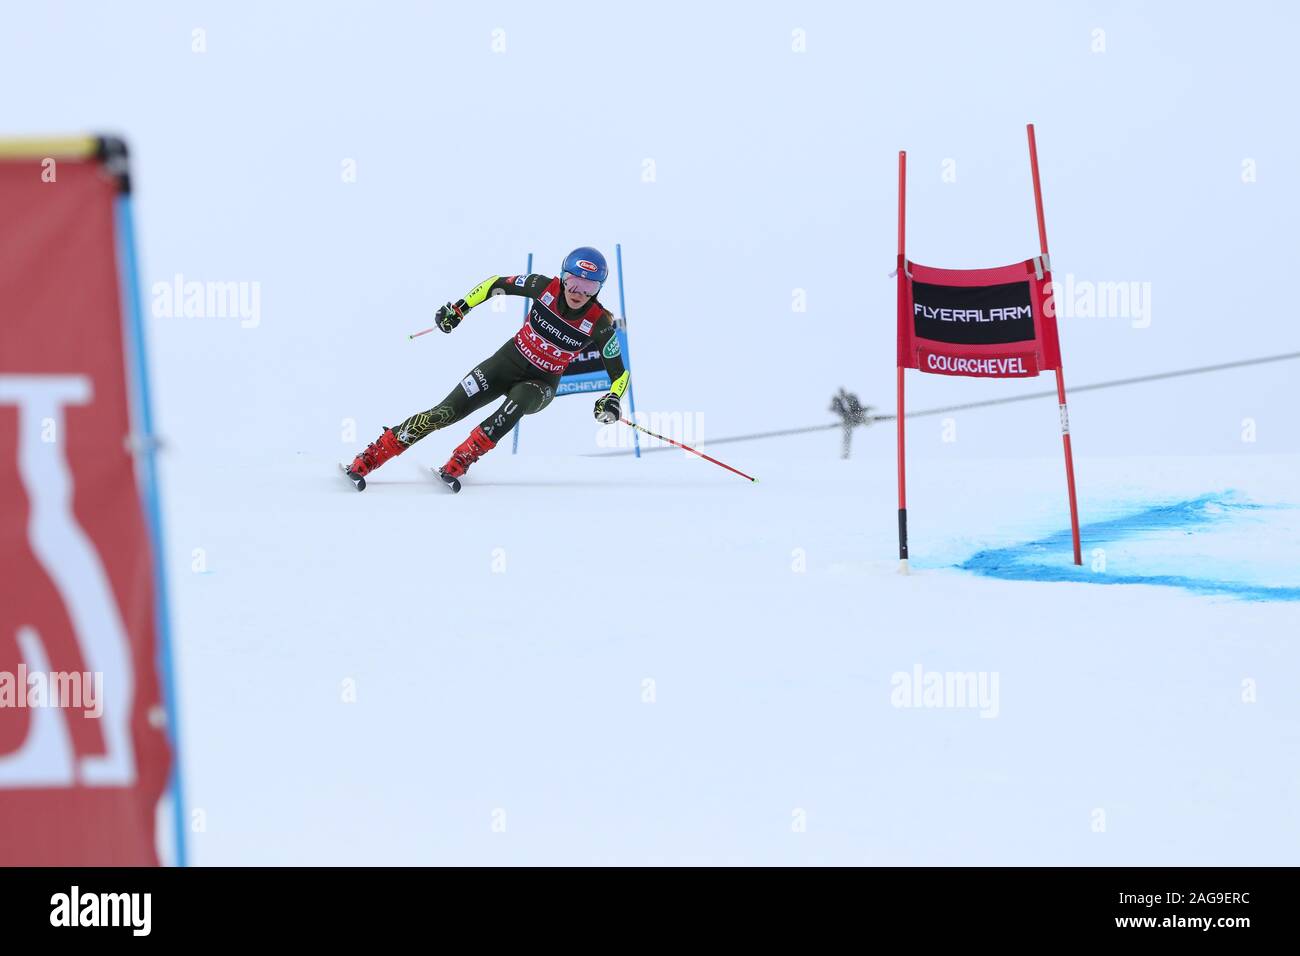 Courchevel Frankreich Dec 17 2019 Mikaela Shiffrin der USA konkurrieren im Riesenslalom der Frauen Audi FIS Alpine Ski World Cup 2019/20 Skifahren Wintersport Stockfoto